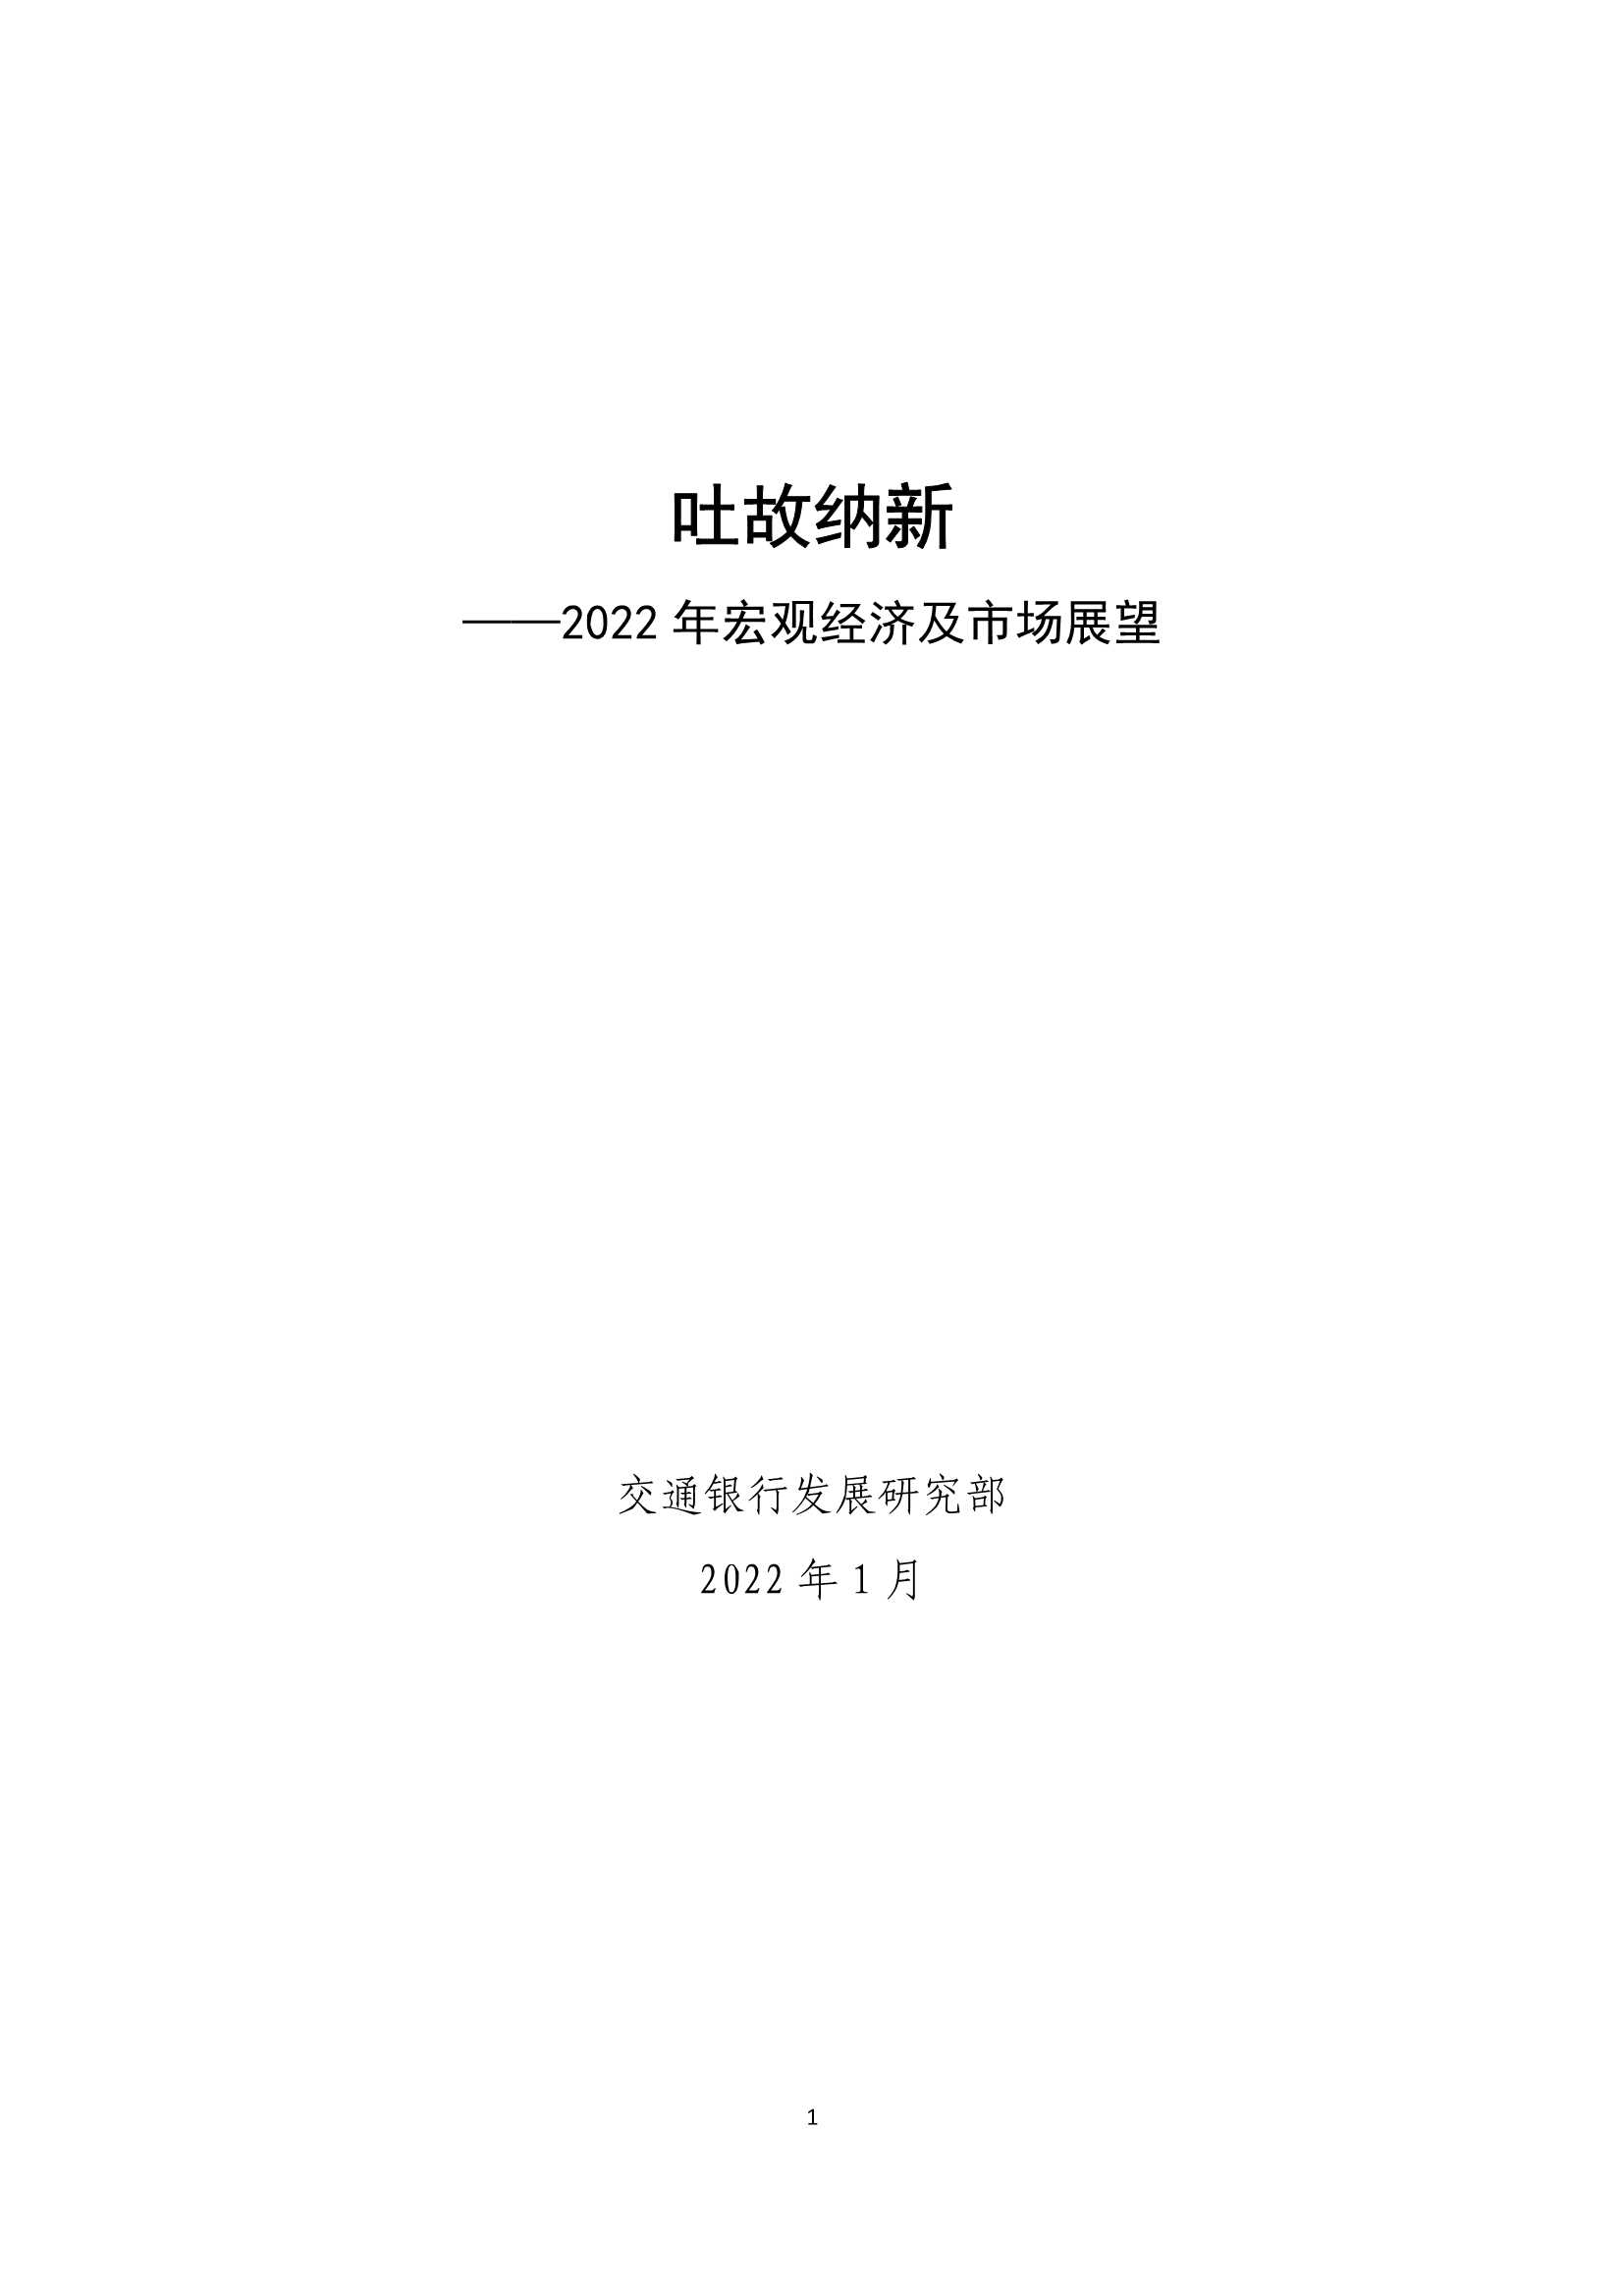 交通银行-2022年宏观经济及市场展望：吐故纳新-20220118-26页